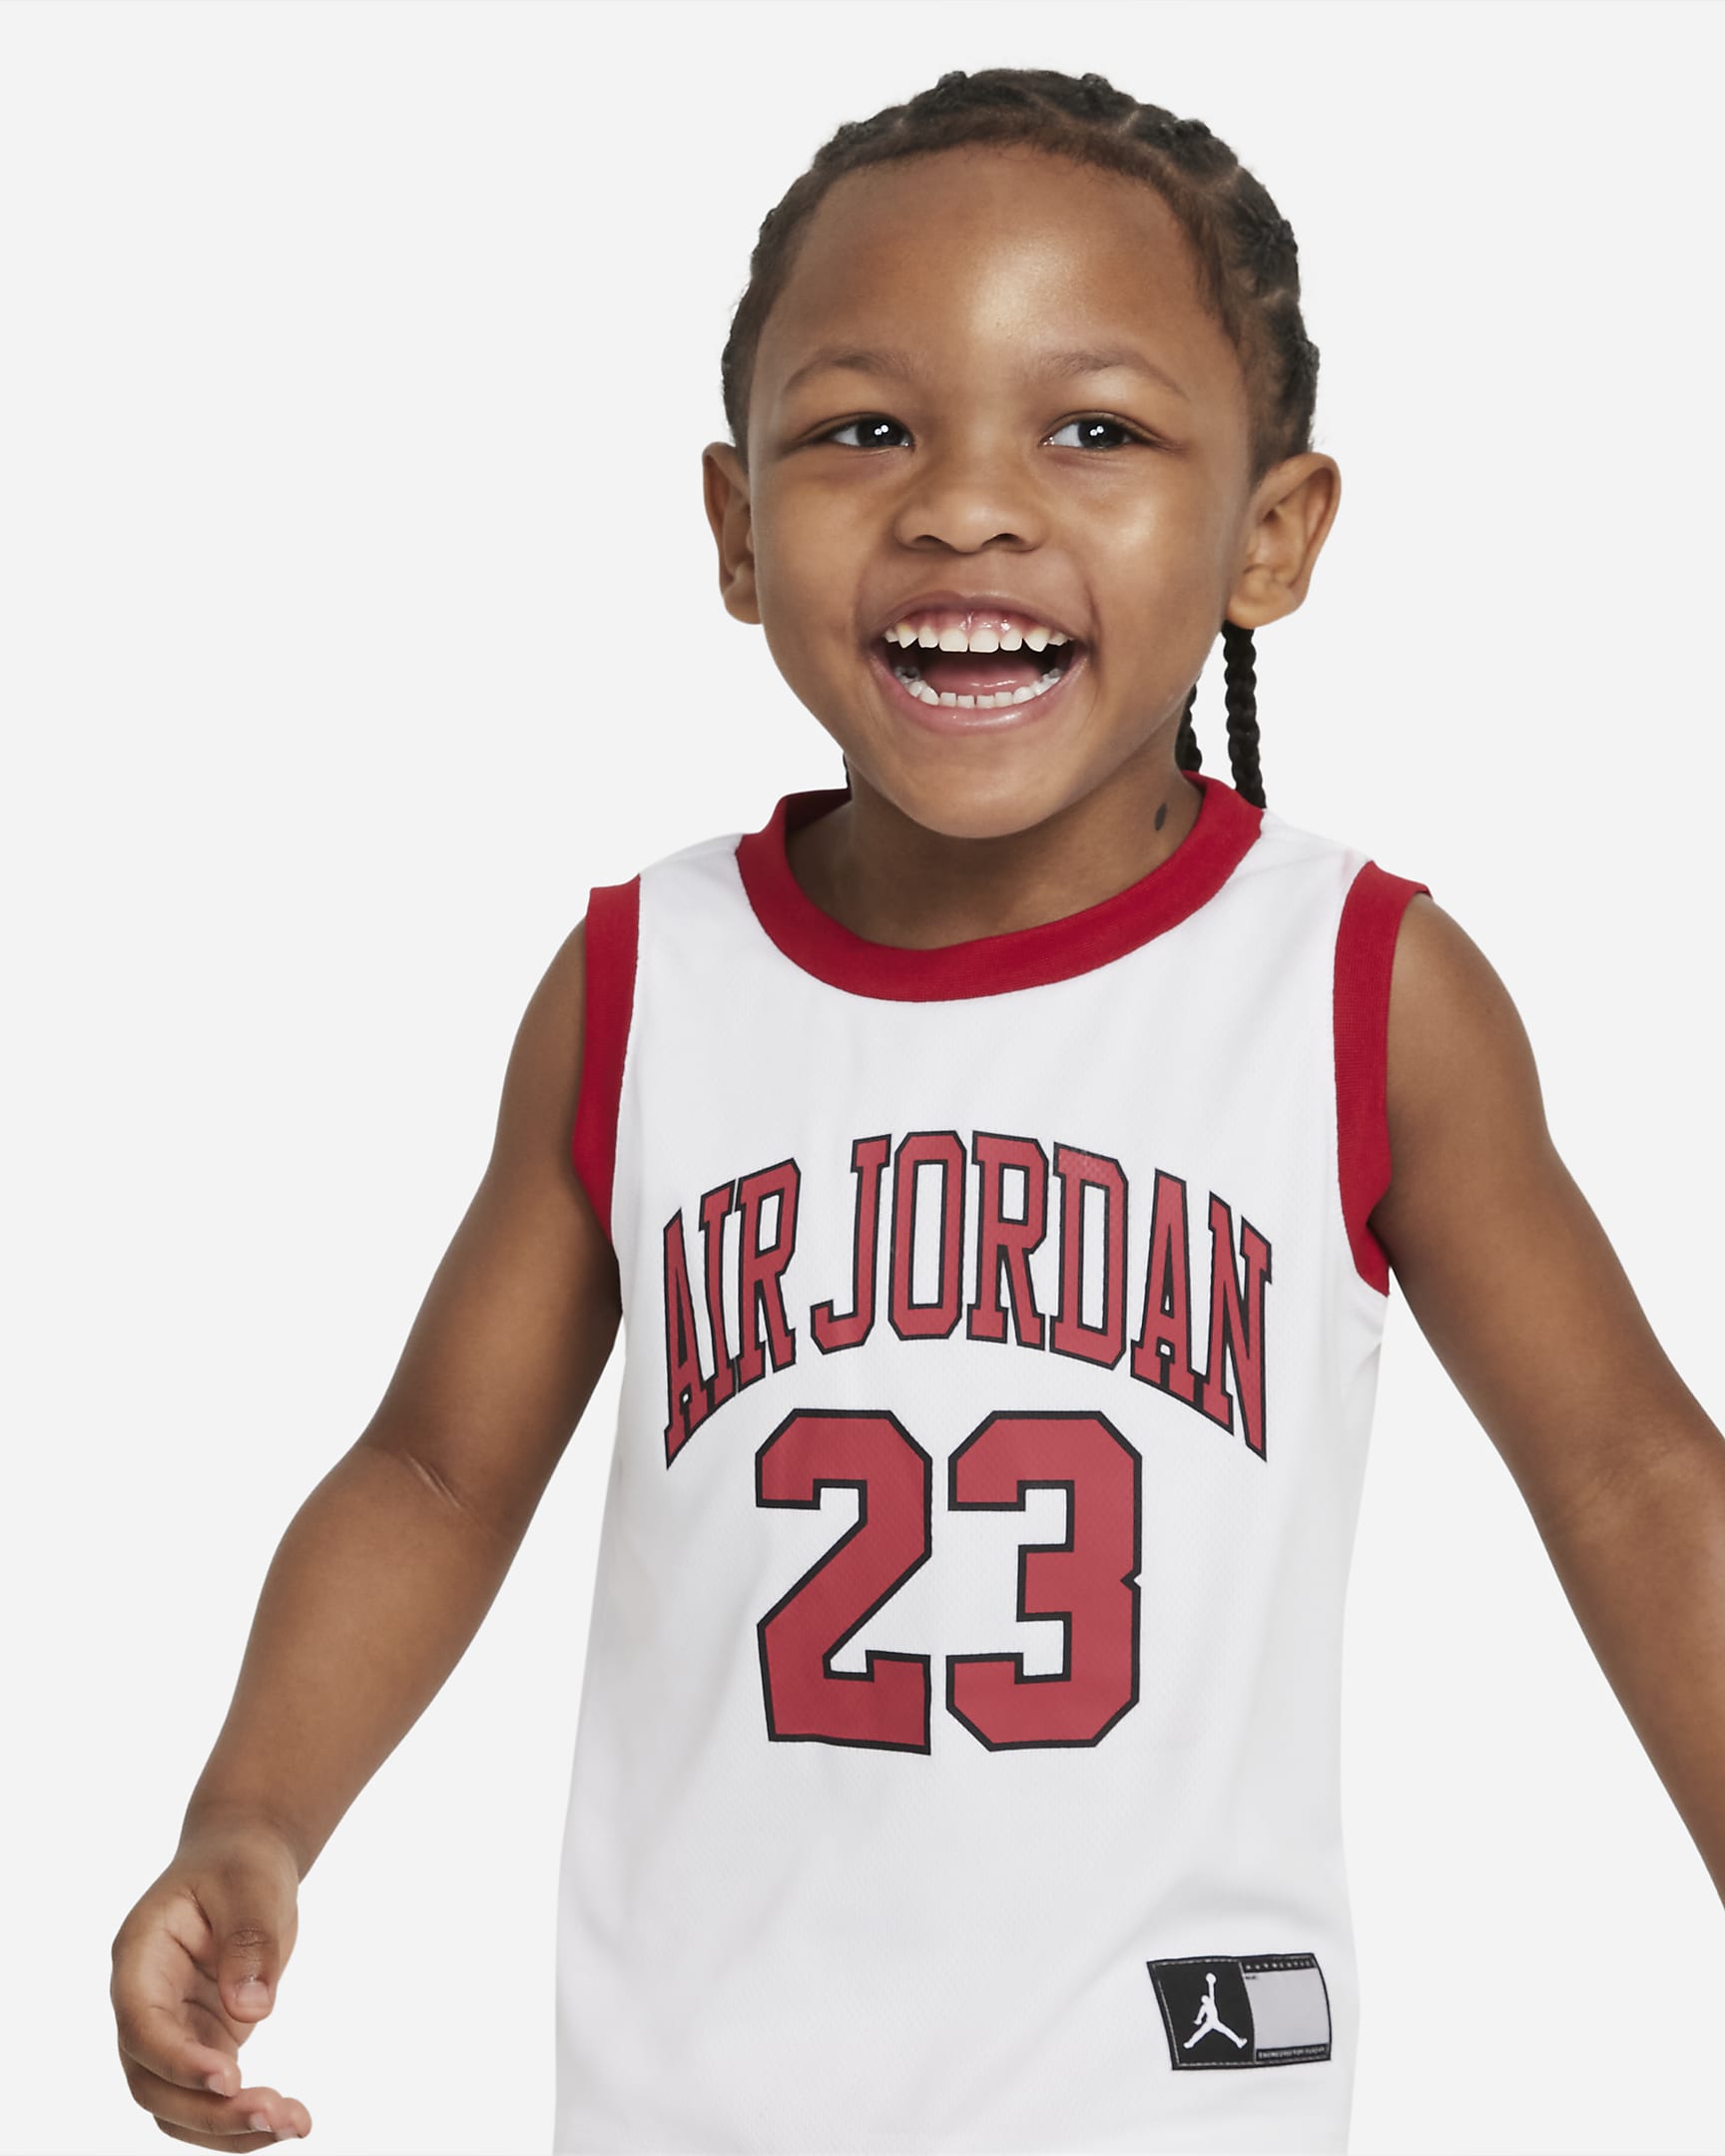 Jordan Toddler Jersey and Shorts Set. Nike.com